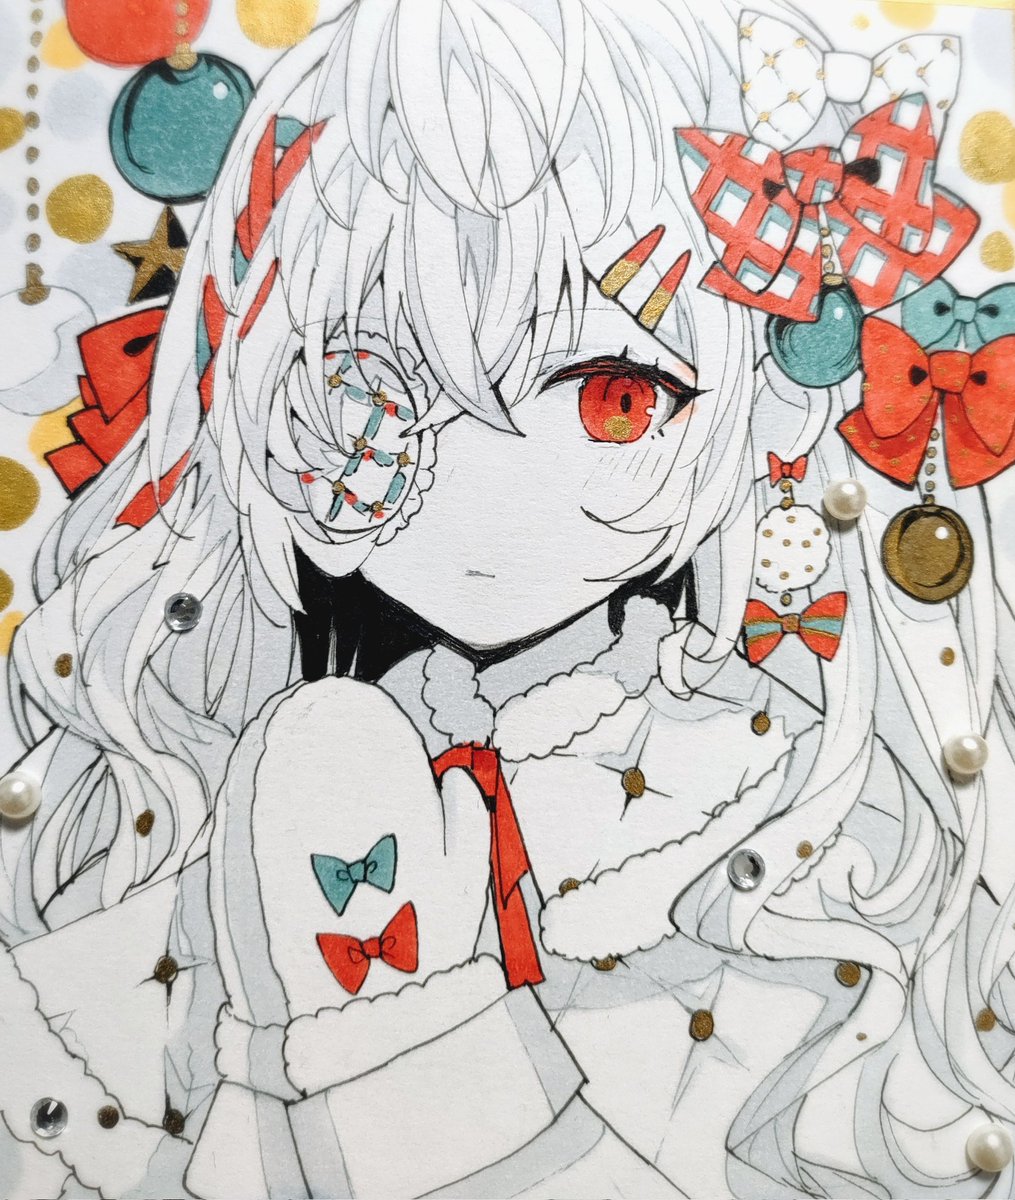 「メリークリスマス 」|咲崎さきp🦄🦛@春季例大祭え41abのイラスト